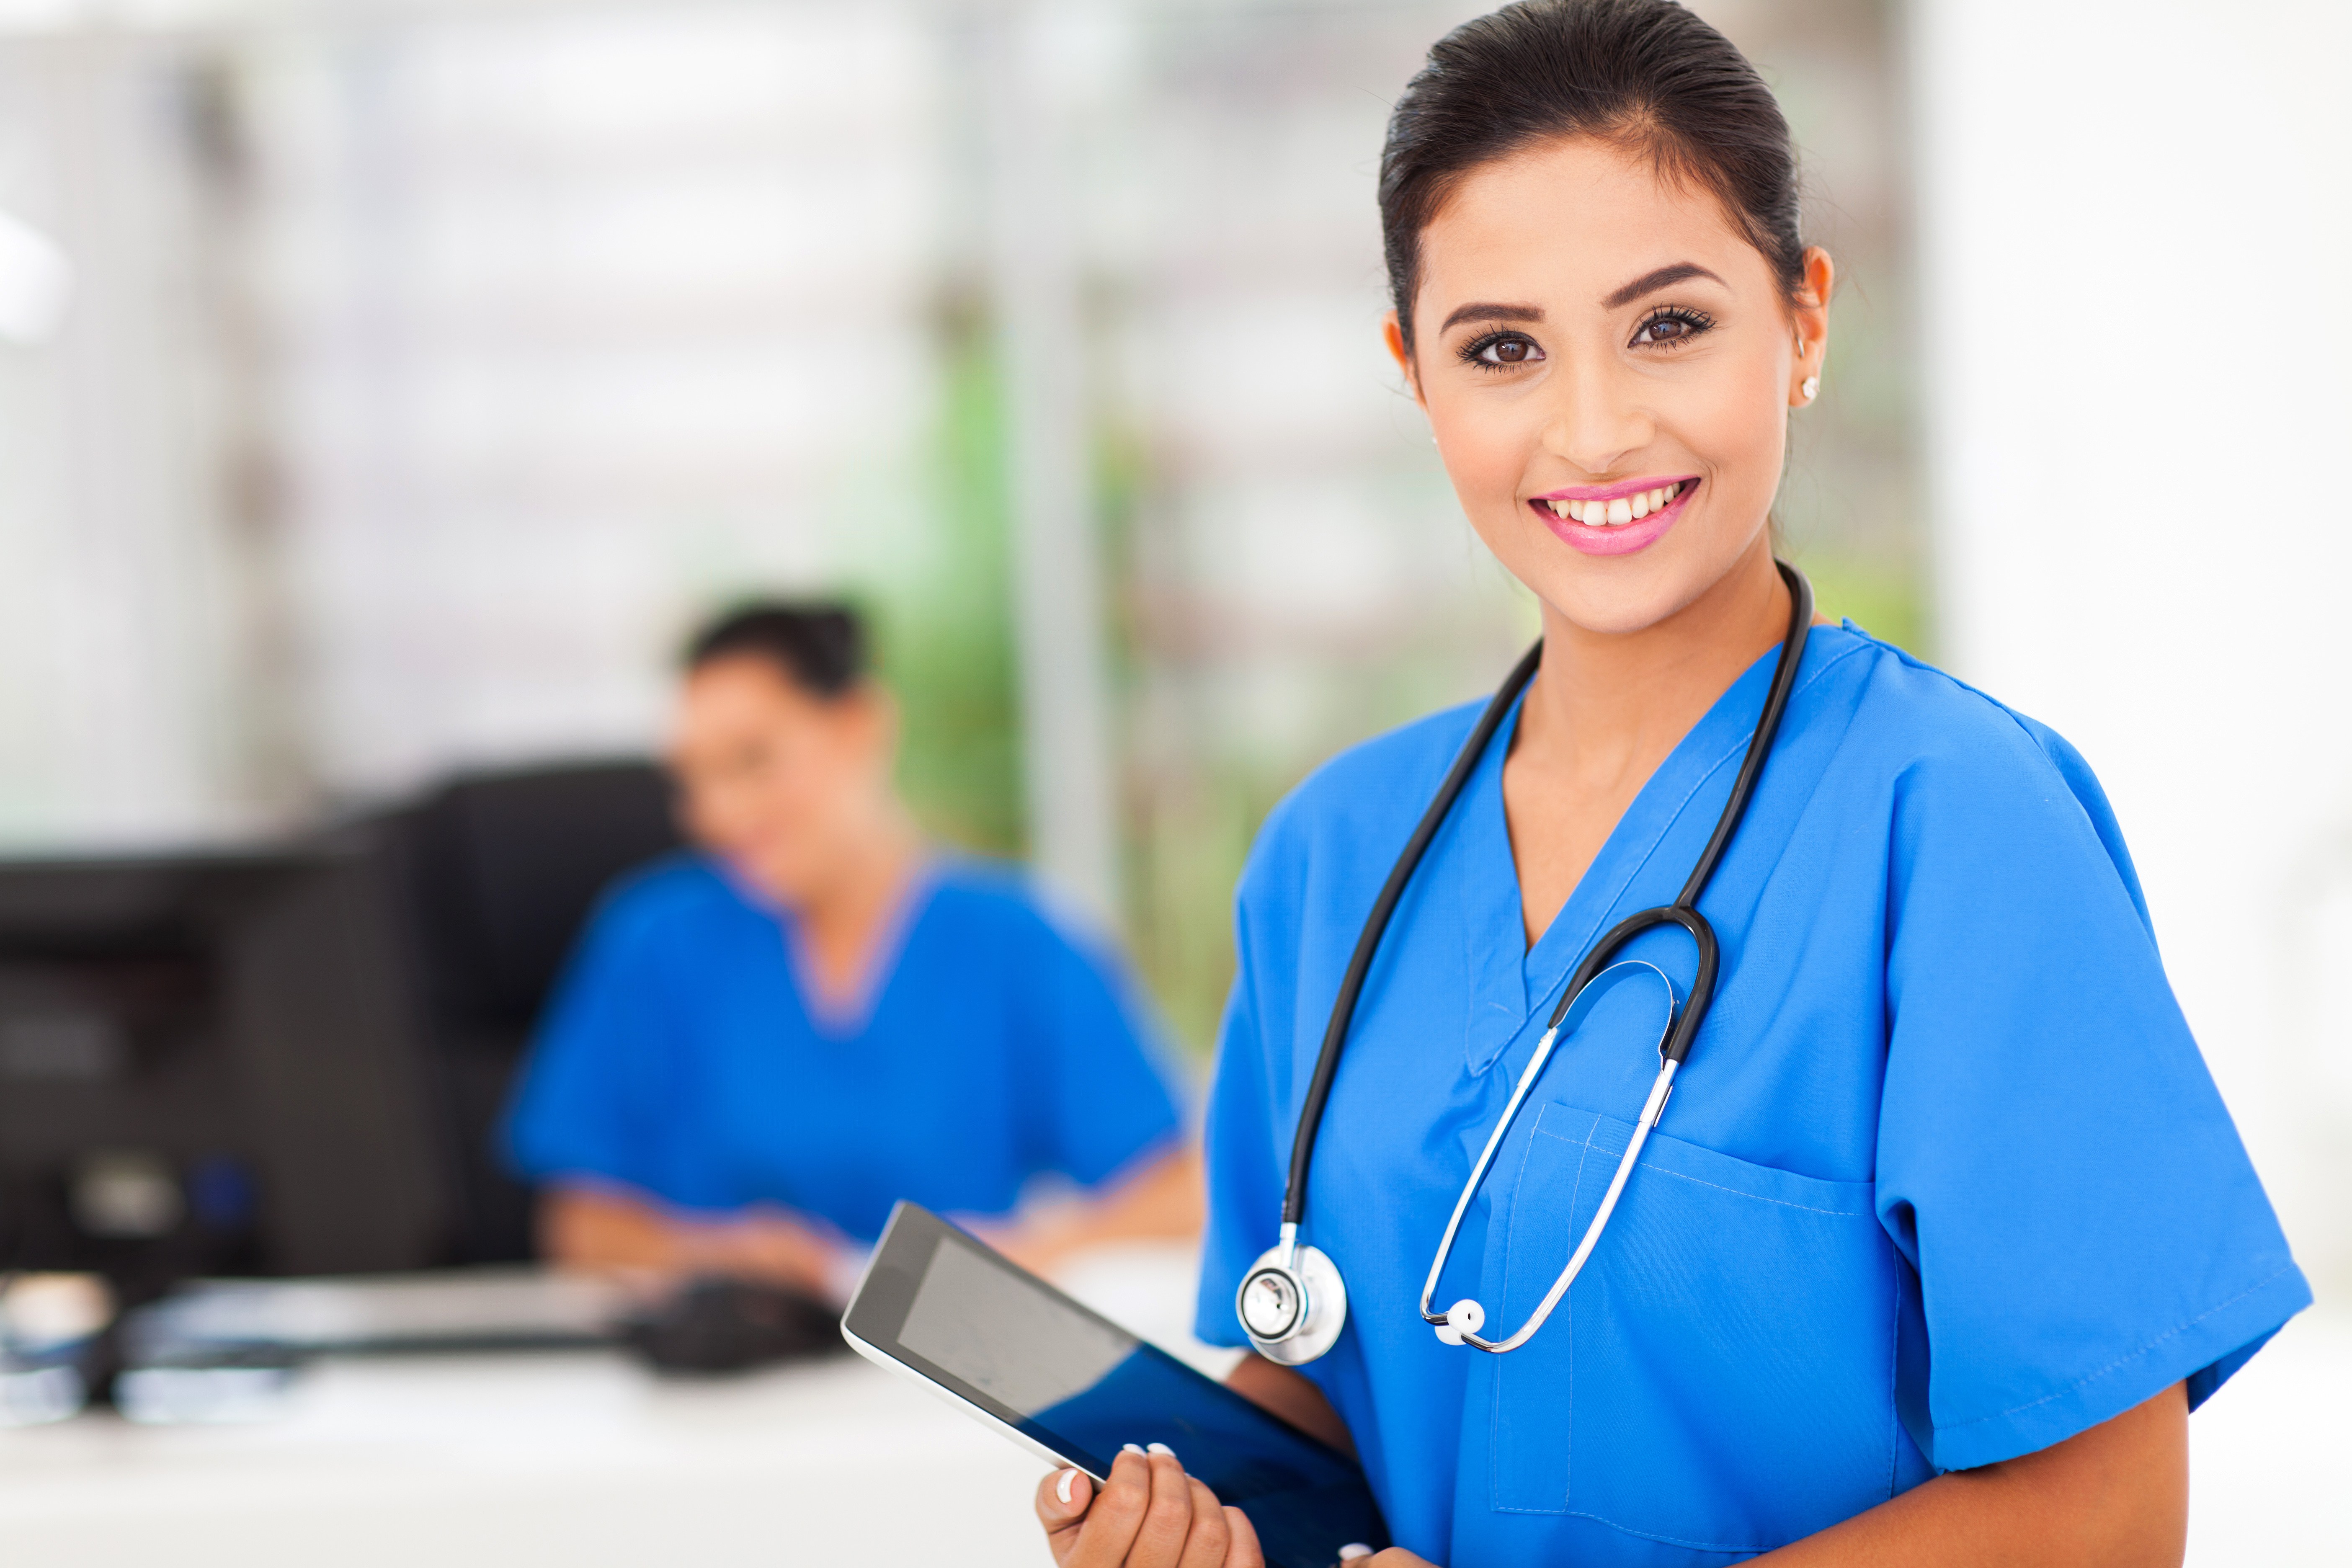 Te gustaría trabajar como auxiliar de enfermería?